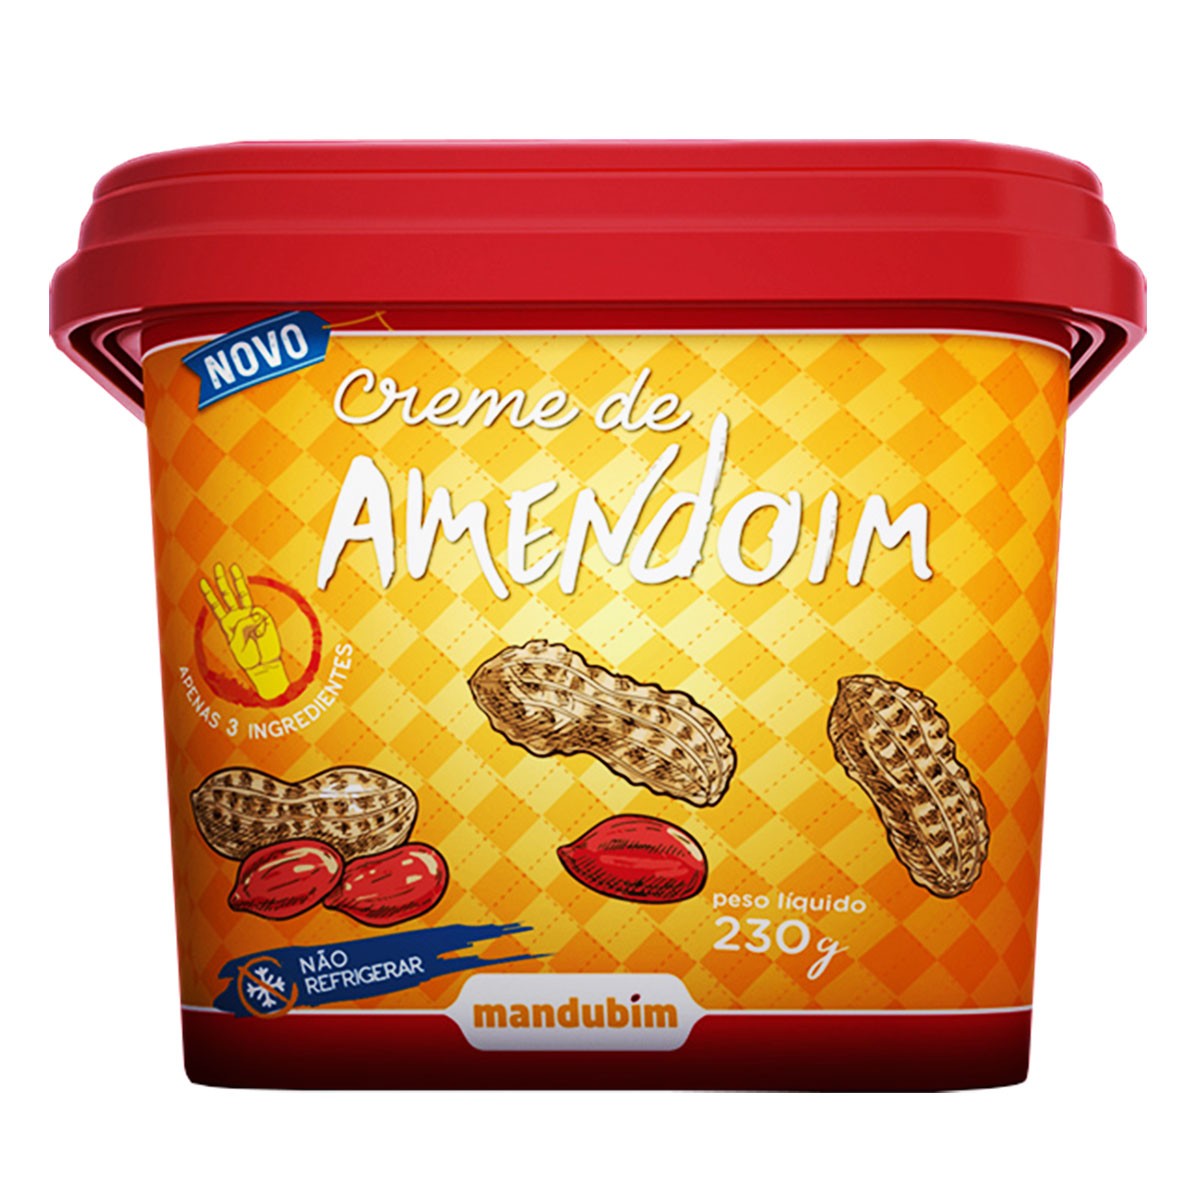 Creme de Amendoim